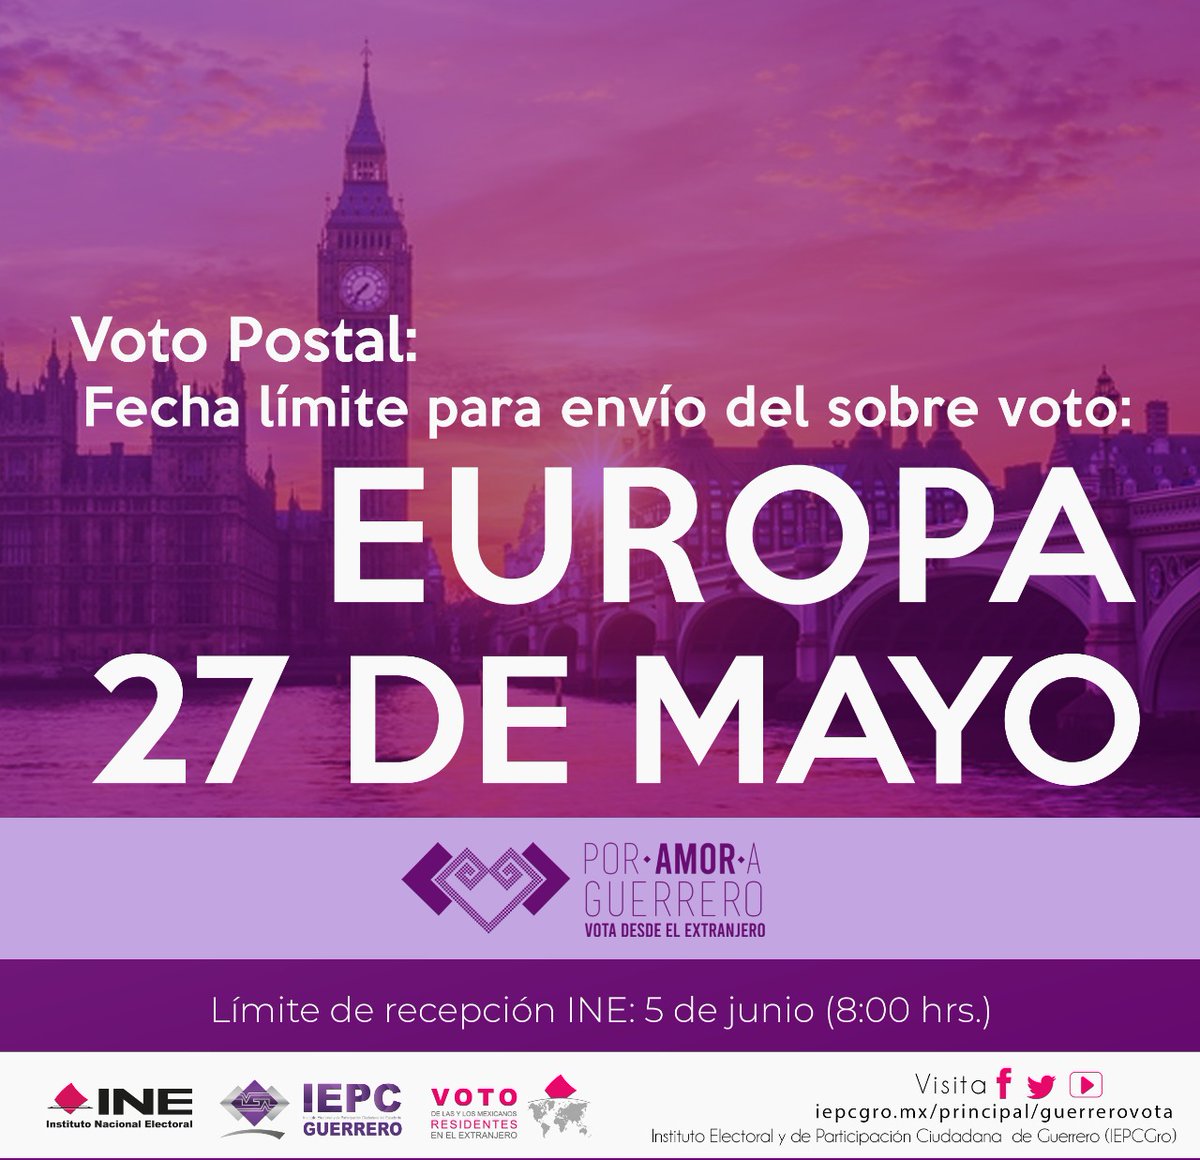 📣📣Guerrerense que vives en #Europa, tienes hasta el 27 de mayo para enviar tu #SobreVoto 🌍 

¡Tu participación fortalece nuestra democracia! 💜 Gracias.

#VotoDesdeElExtranjero